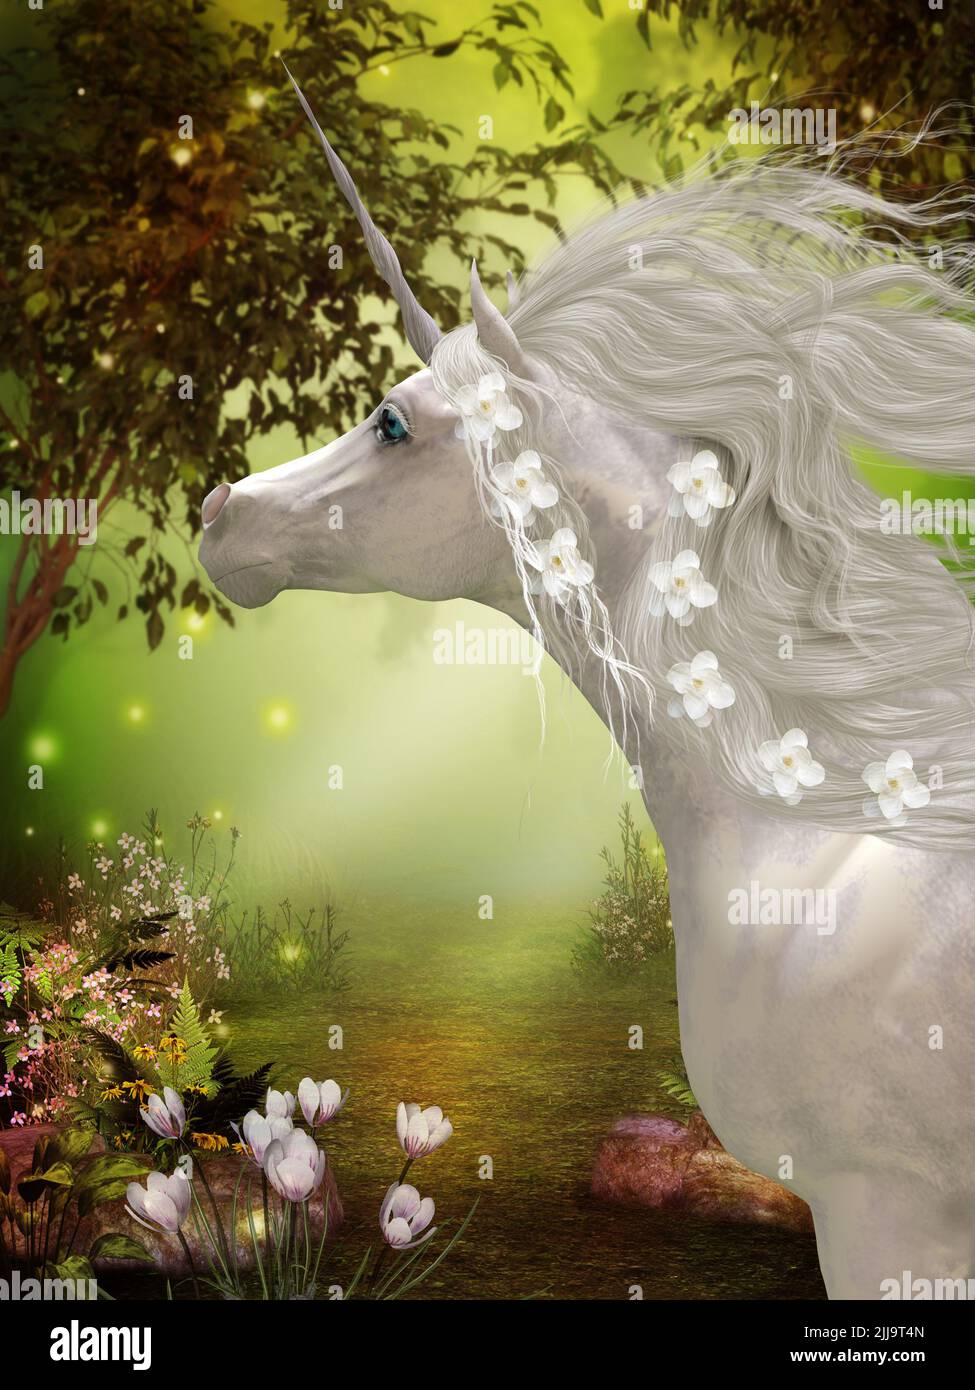 El Unicornio es un caballo blanco con cuernos, criatura de folklore y leyenda que vive en un bosque mágico. Foto de stock